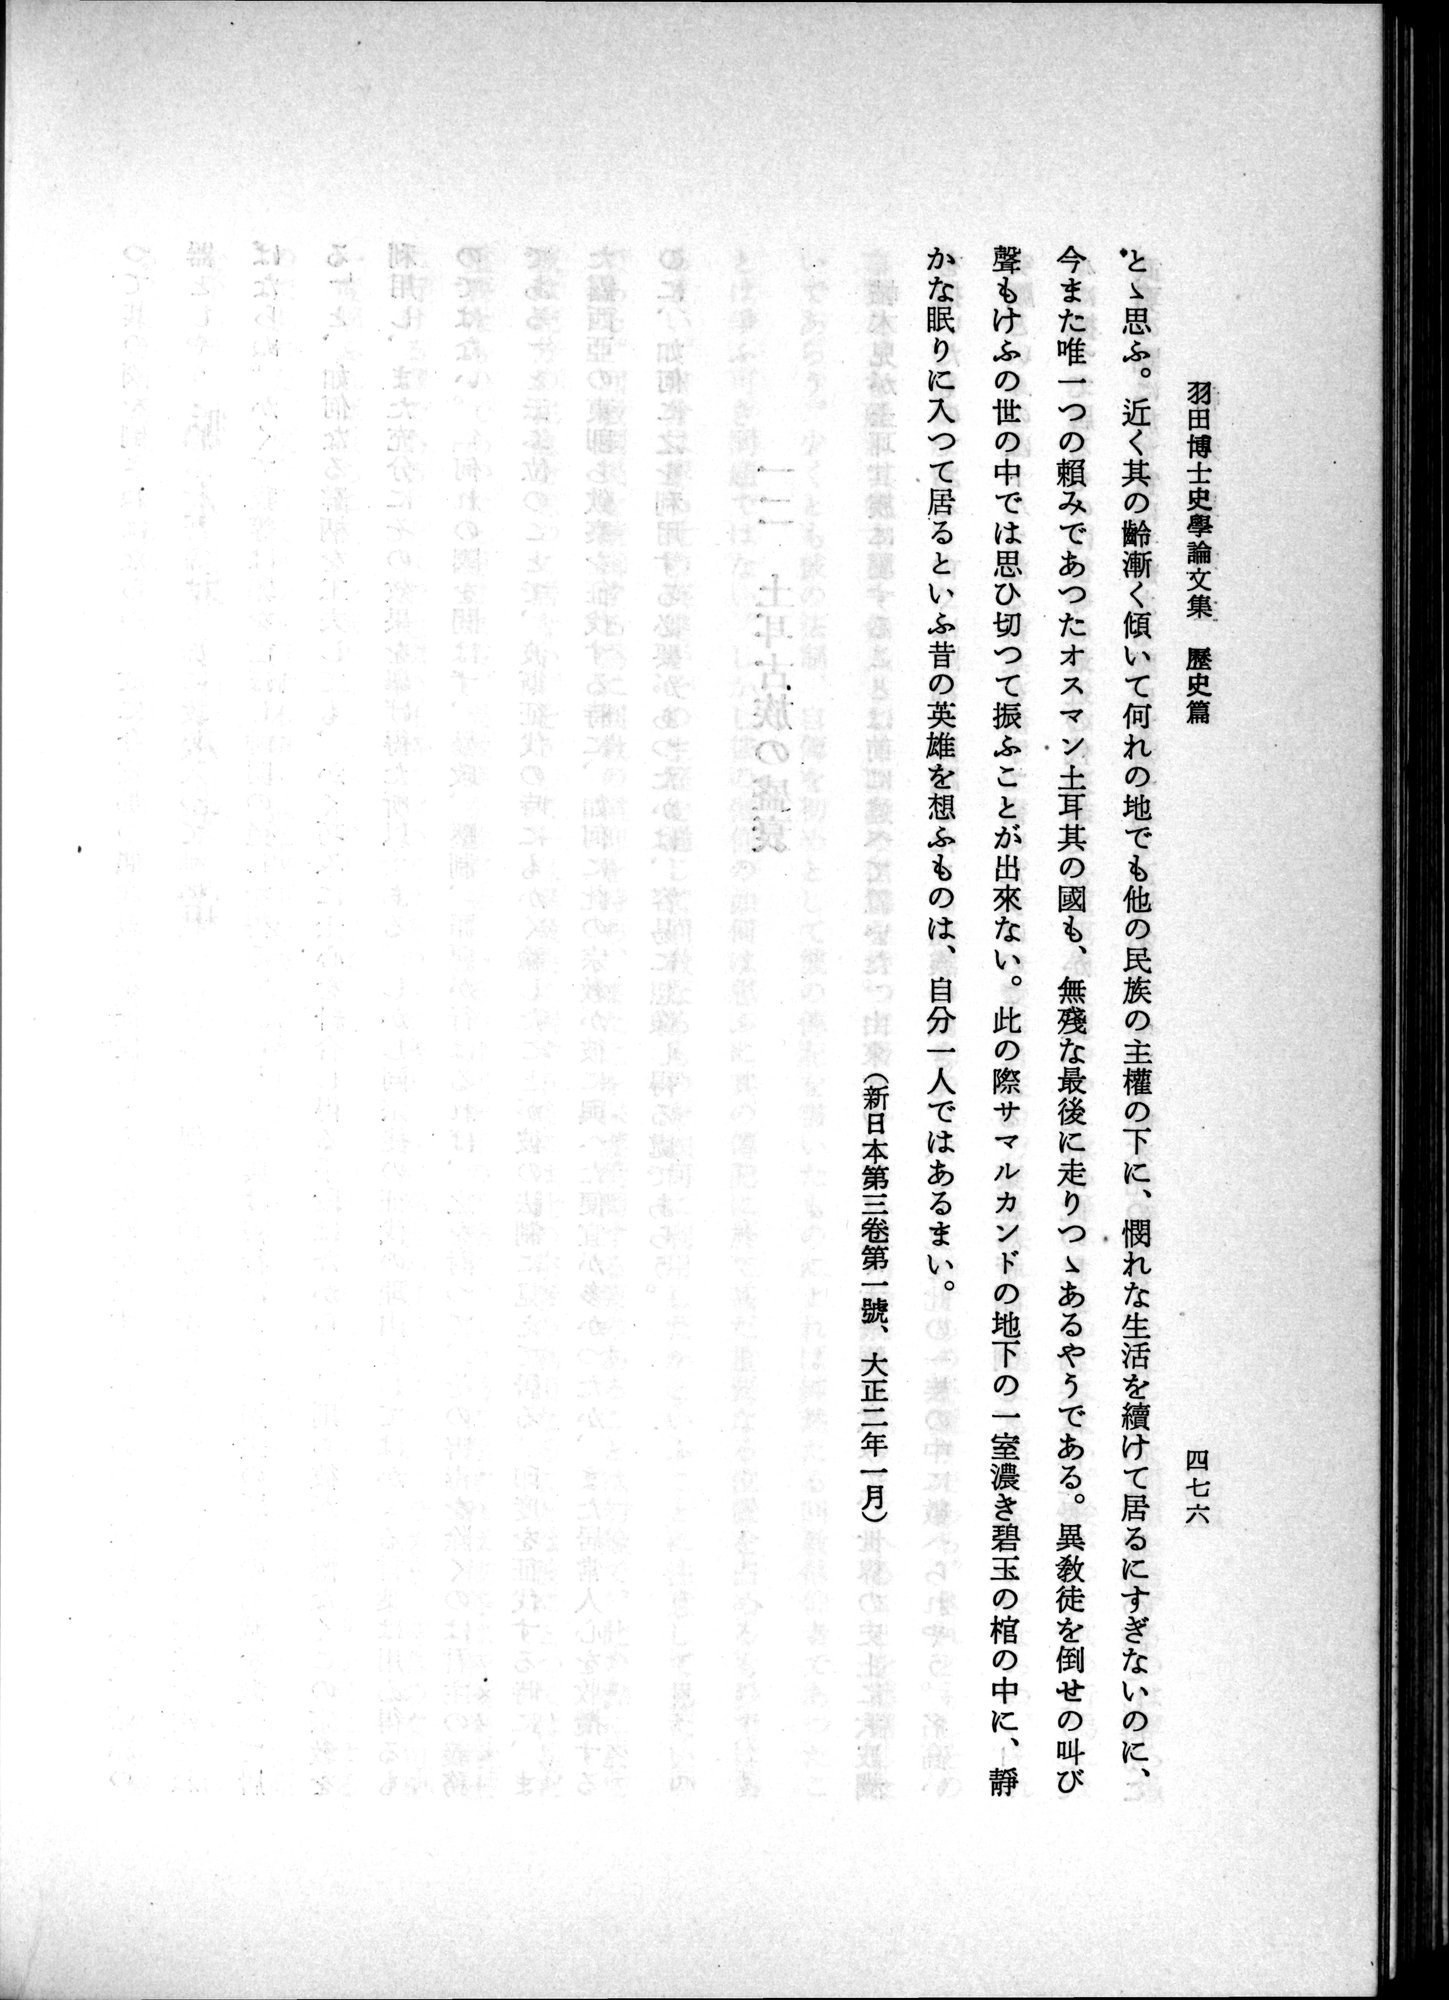 羽田博士史学論文集 : vol.1 / Page 514 (Grayscale High Resolution Image)